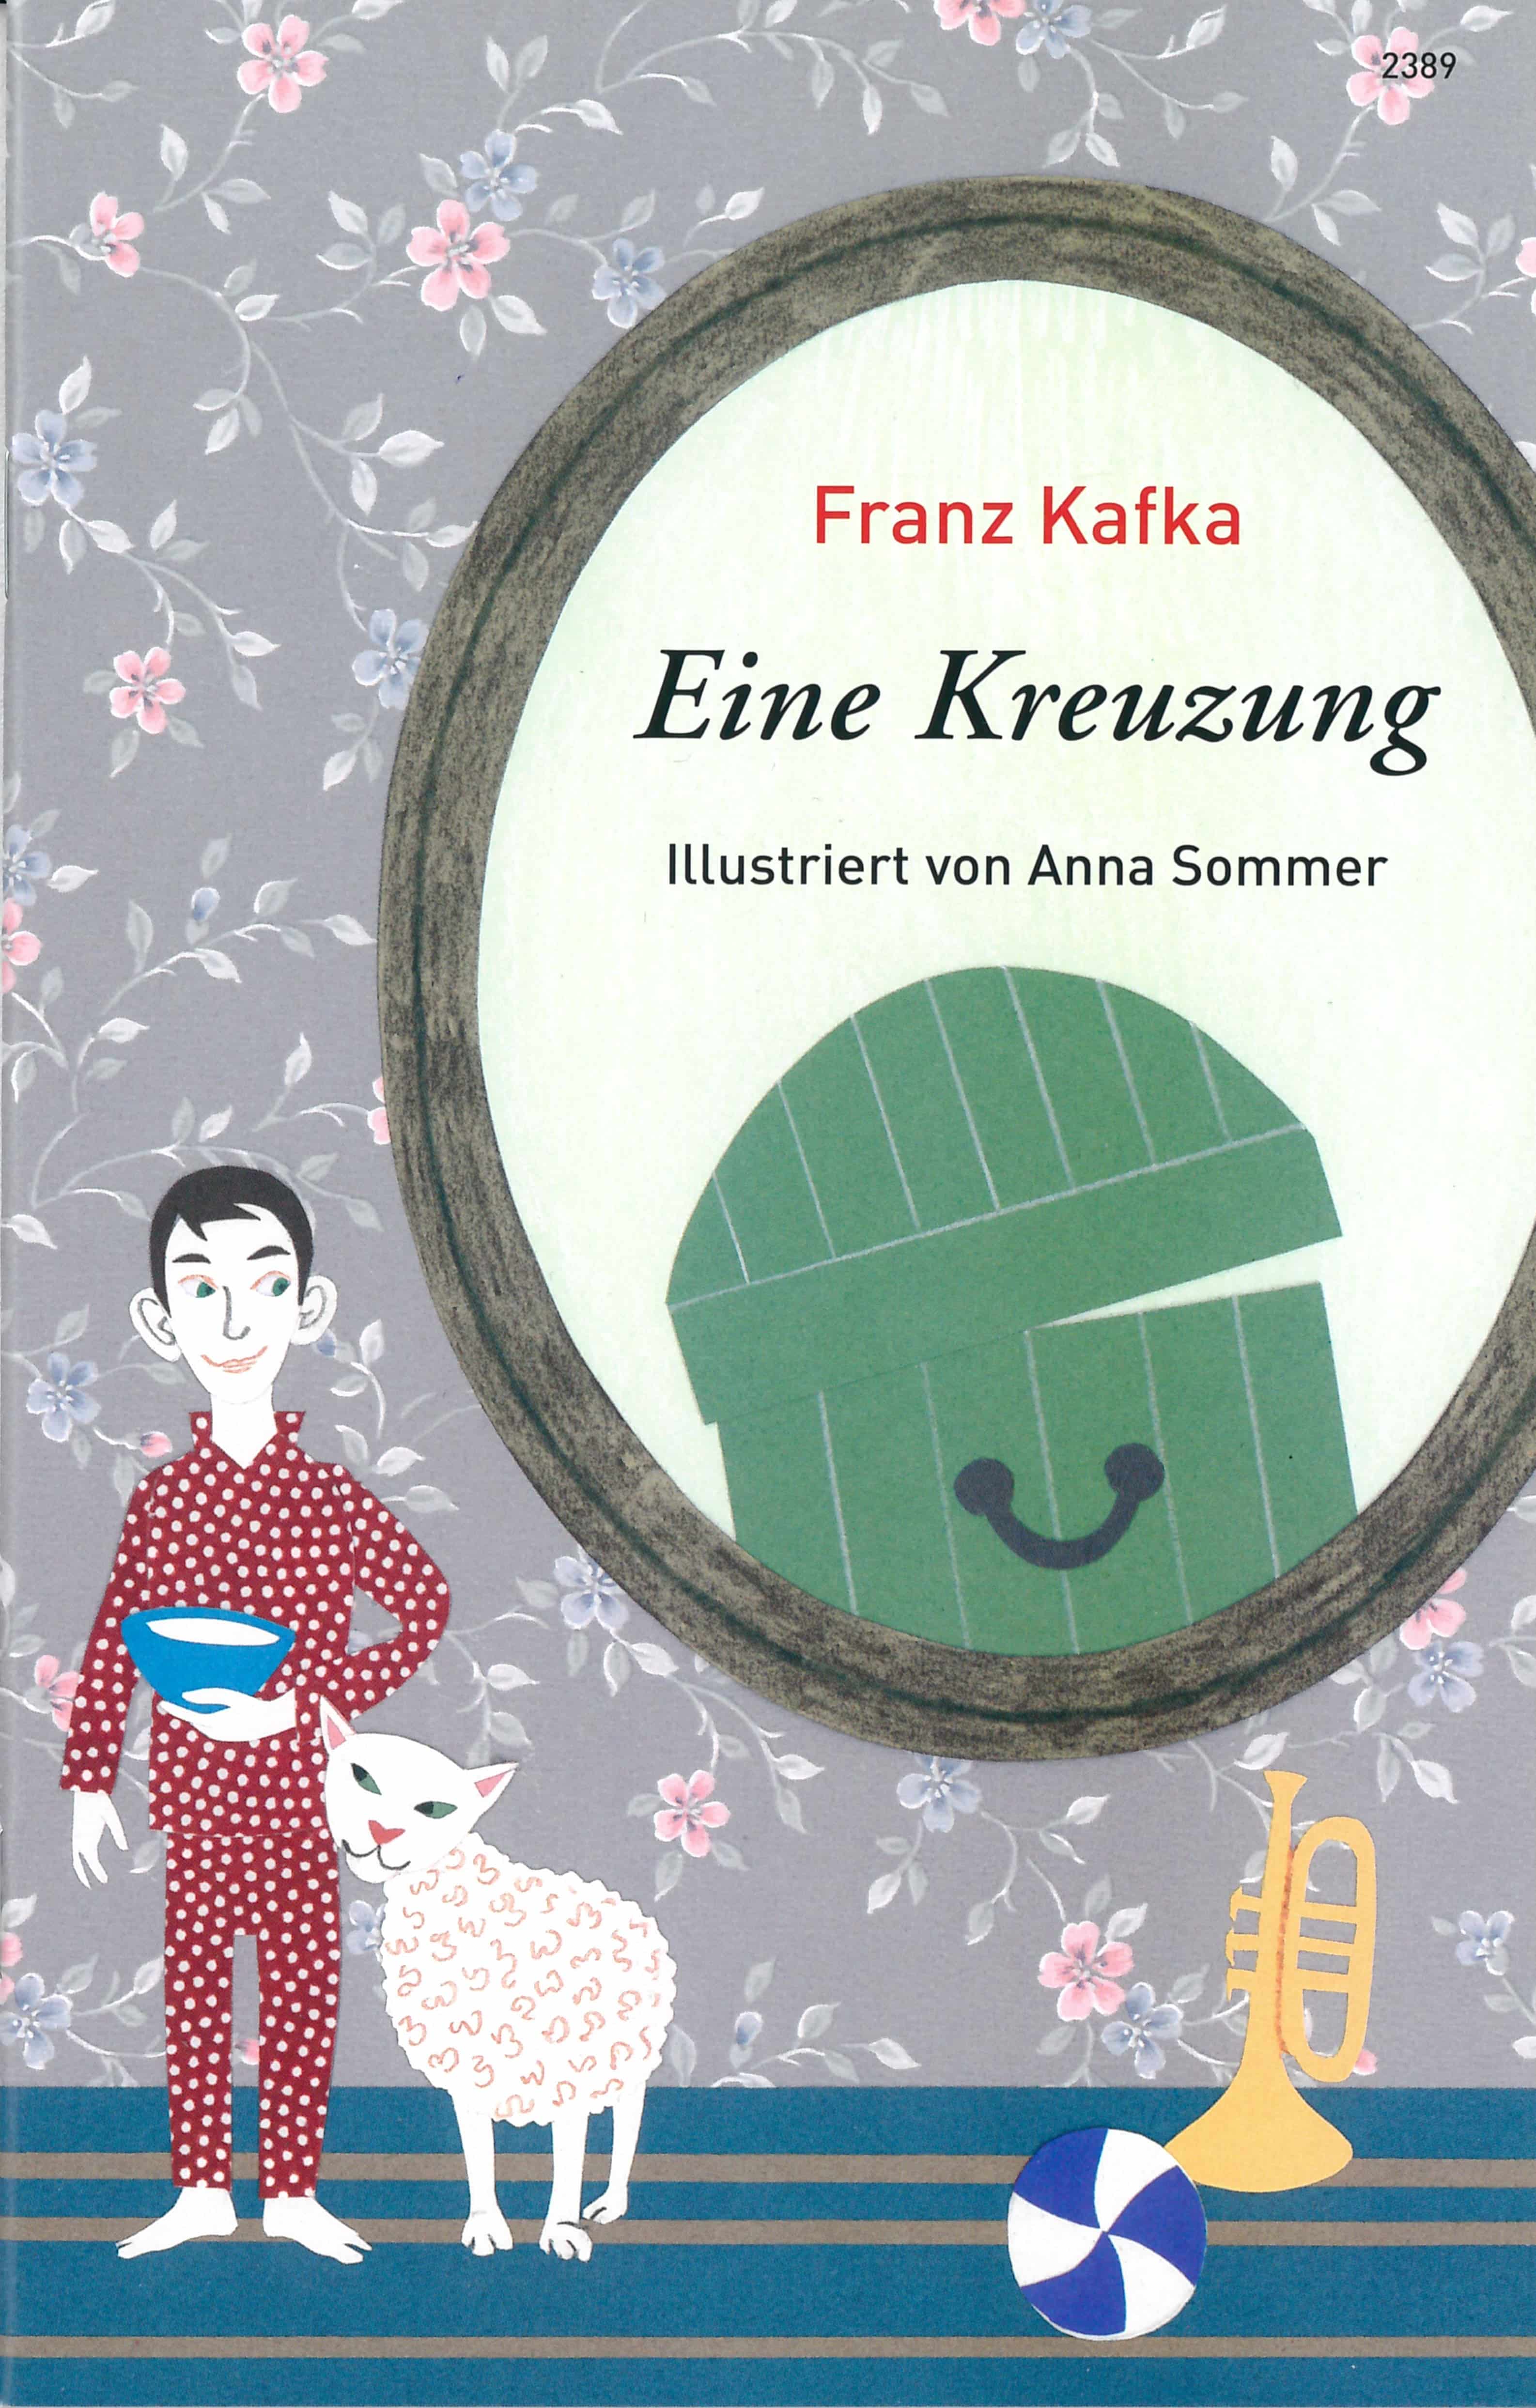 Eine Kreuzung, ein Buch von Franz Kafka, Illustration von Anna Sommer, SJW Verlag, Fantasy, Weltliteratur